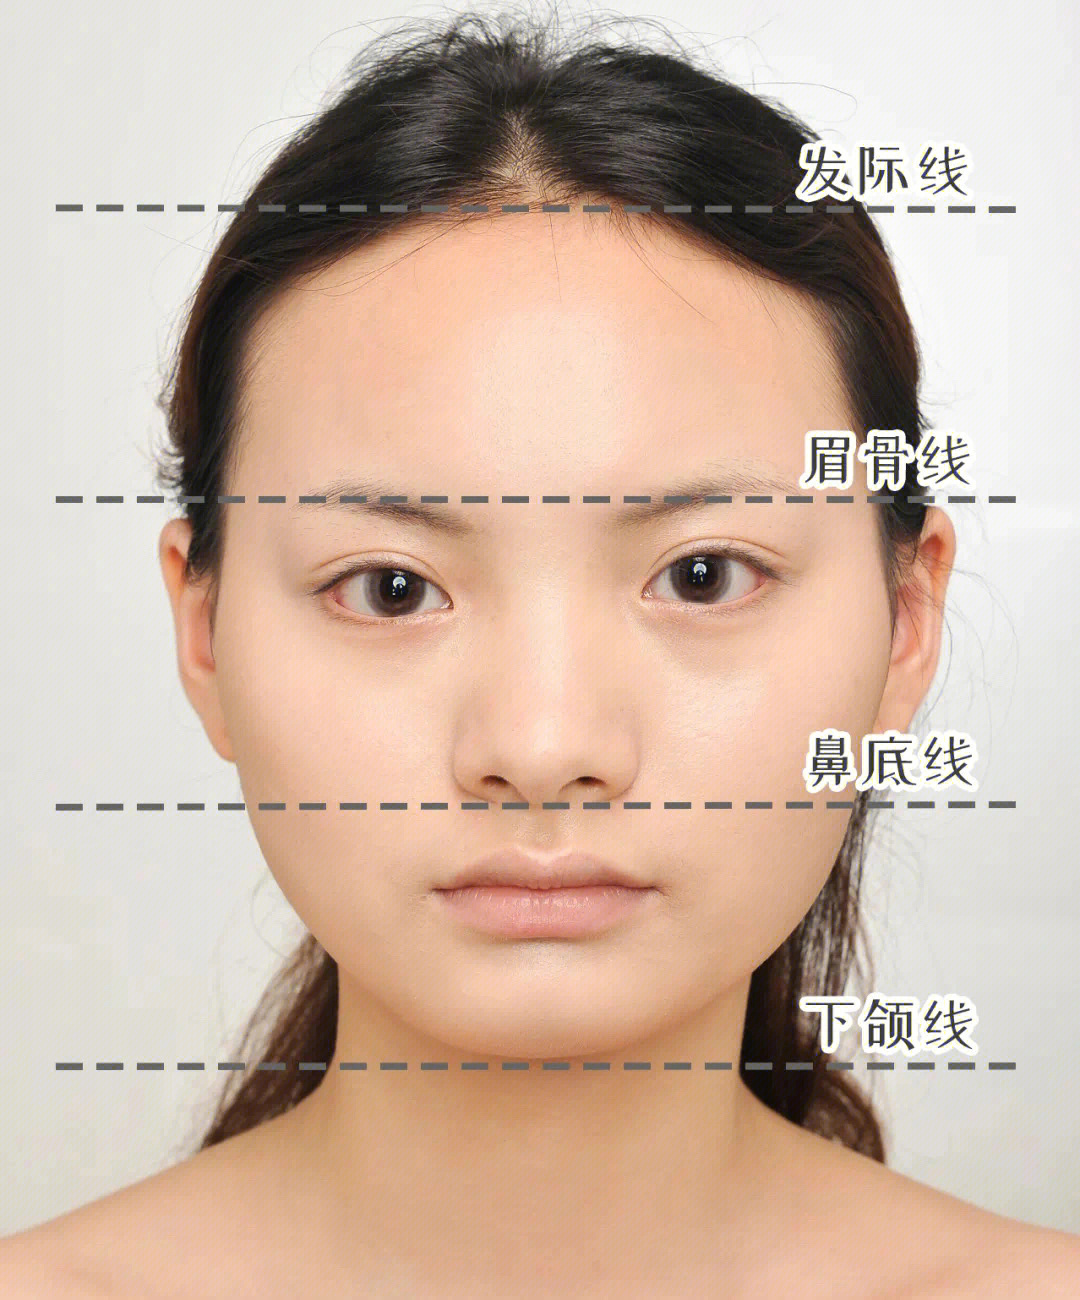 短宽脸化妆修饰之前,一定要先搞清楚自己是哪一部分比较短,再进行针对